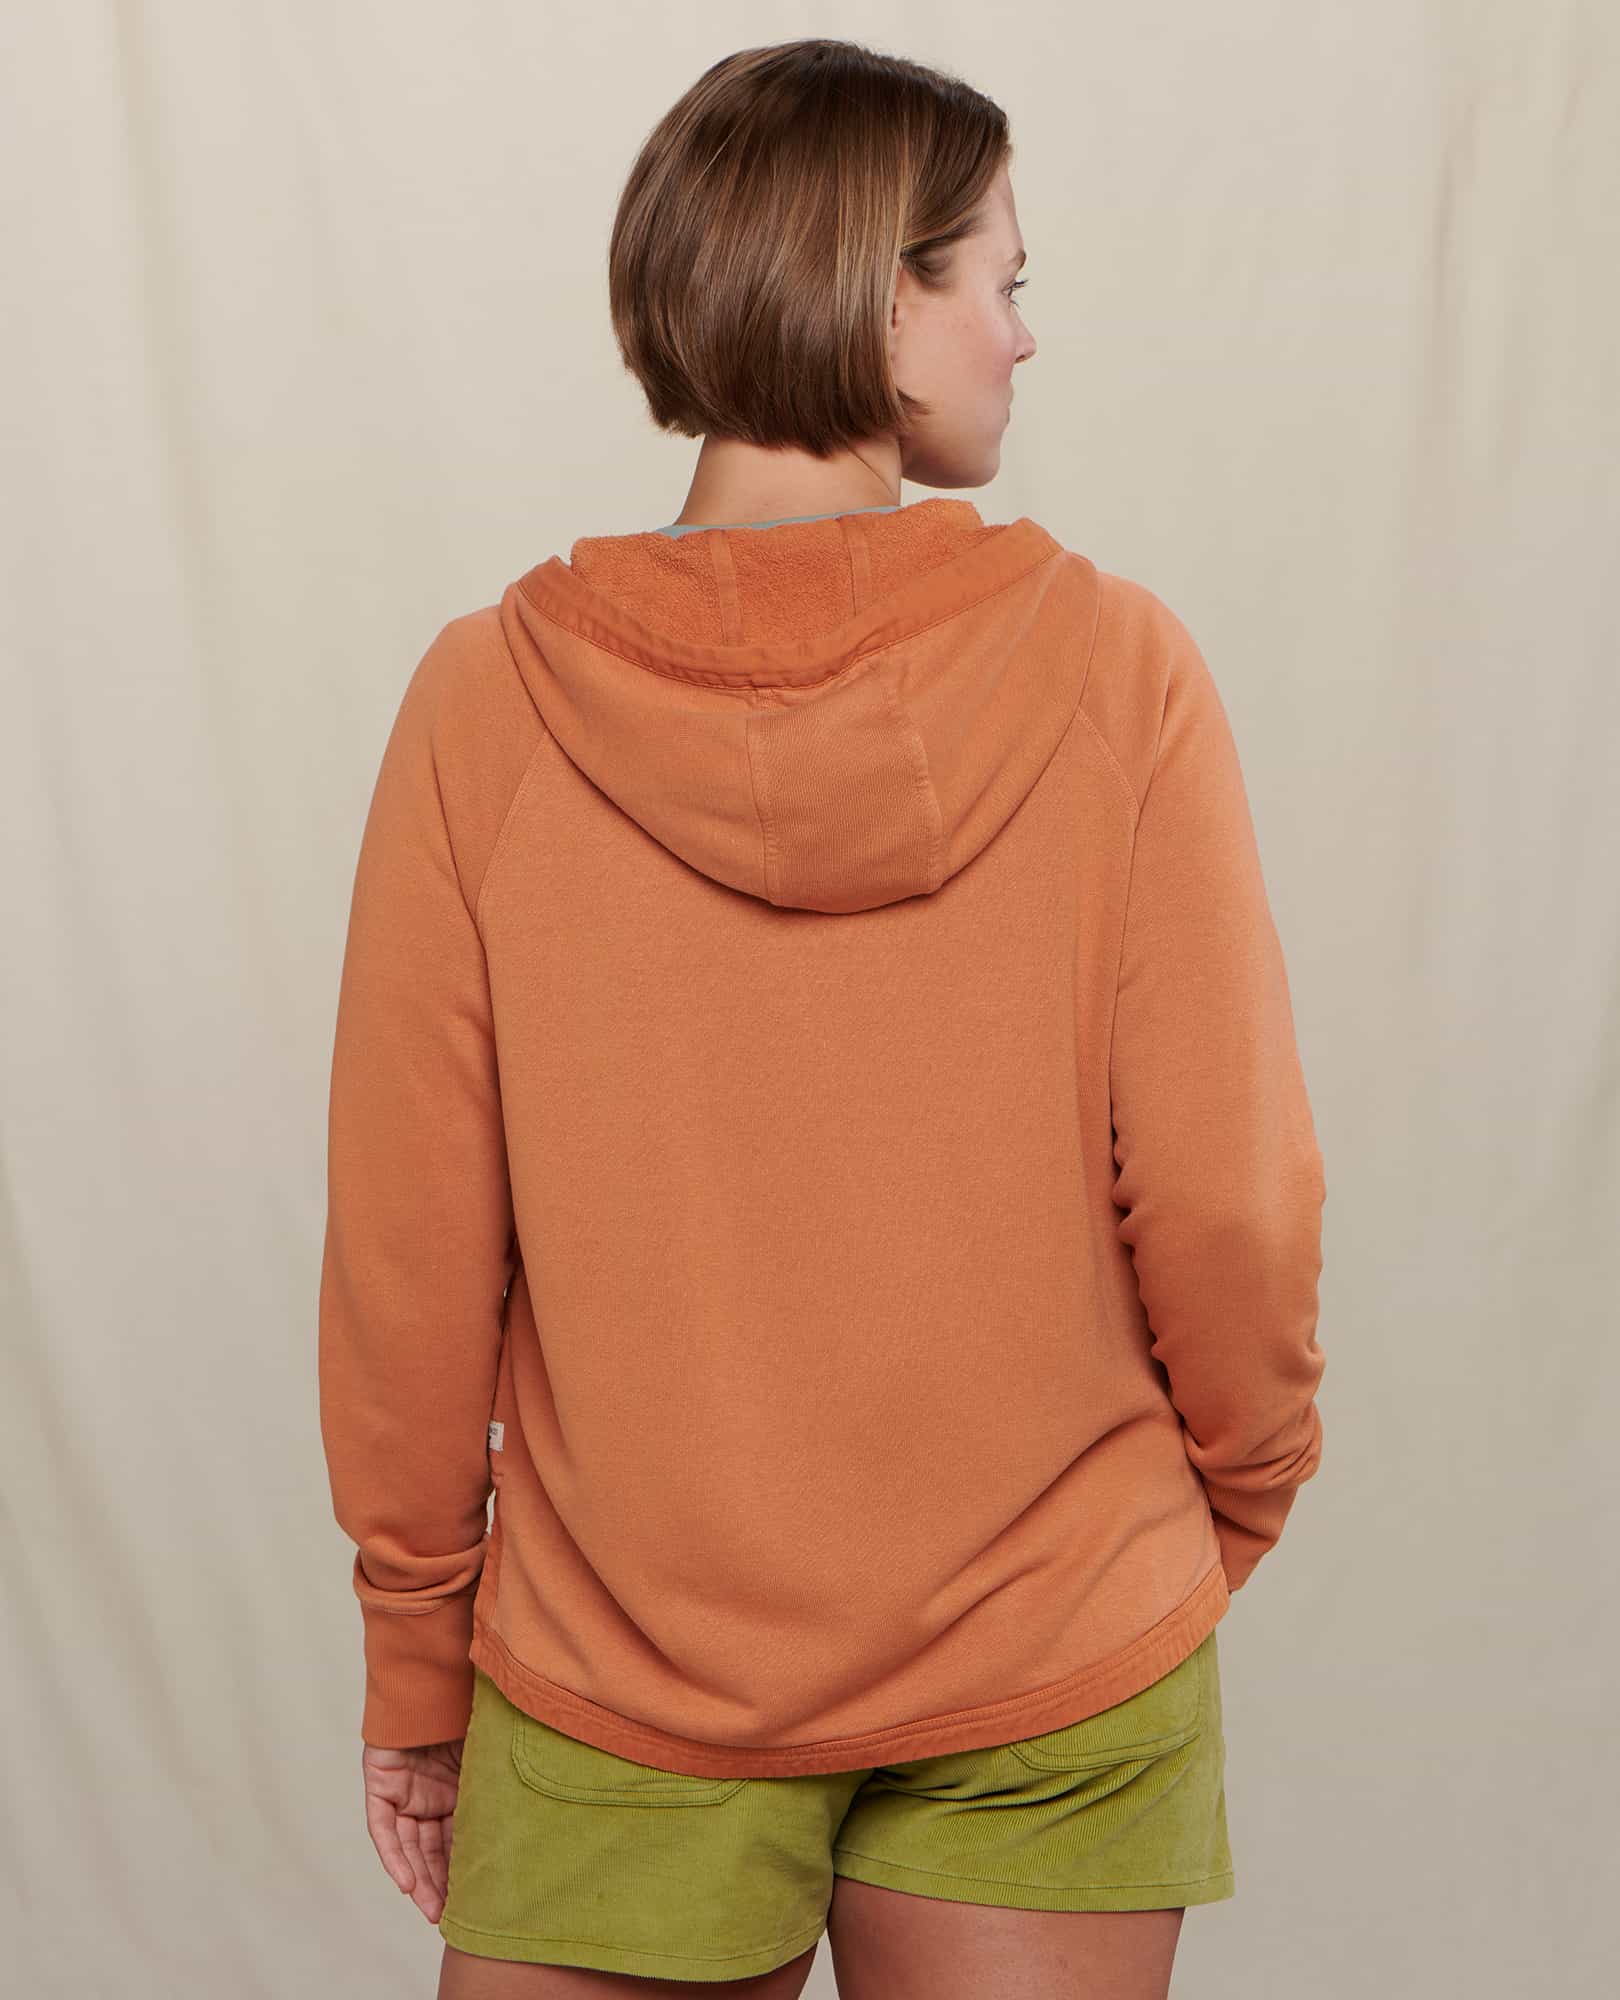 Pre-Owned Aerie Women's Size XS Sweatshirt 